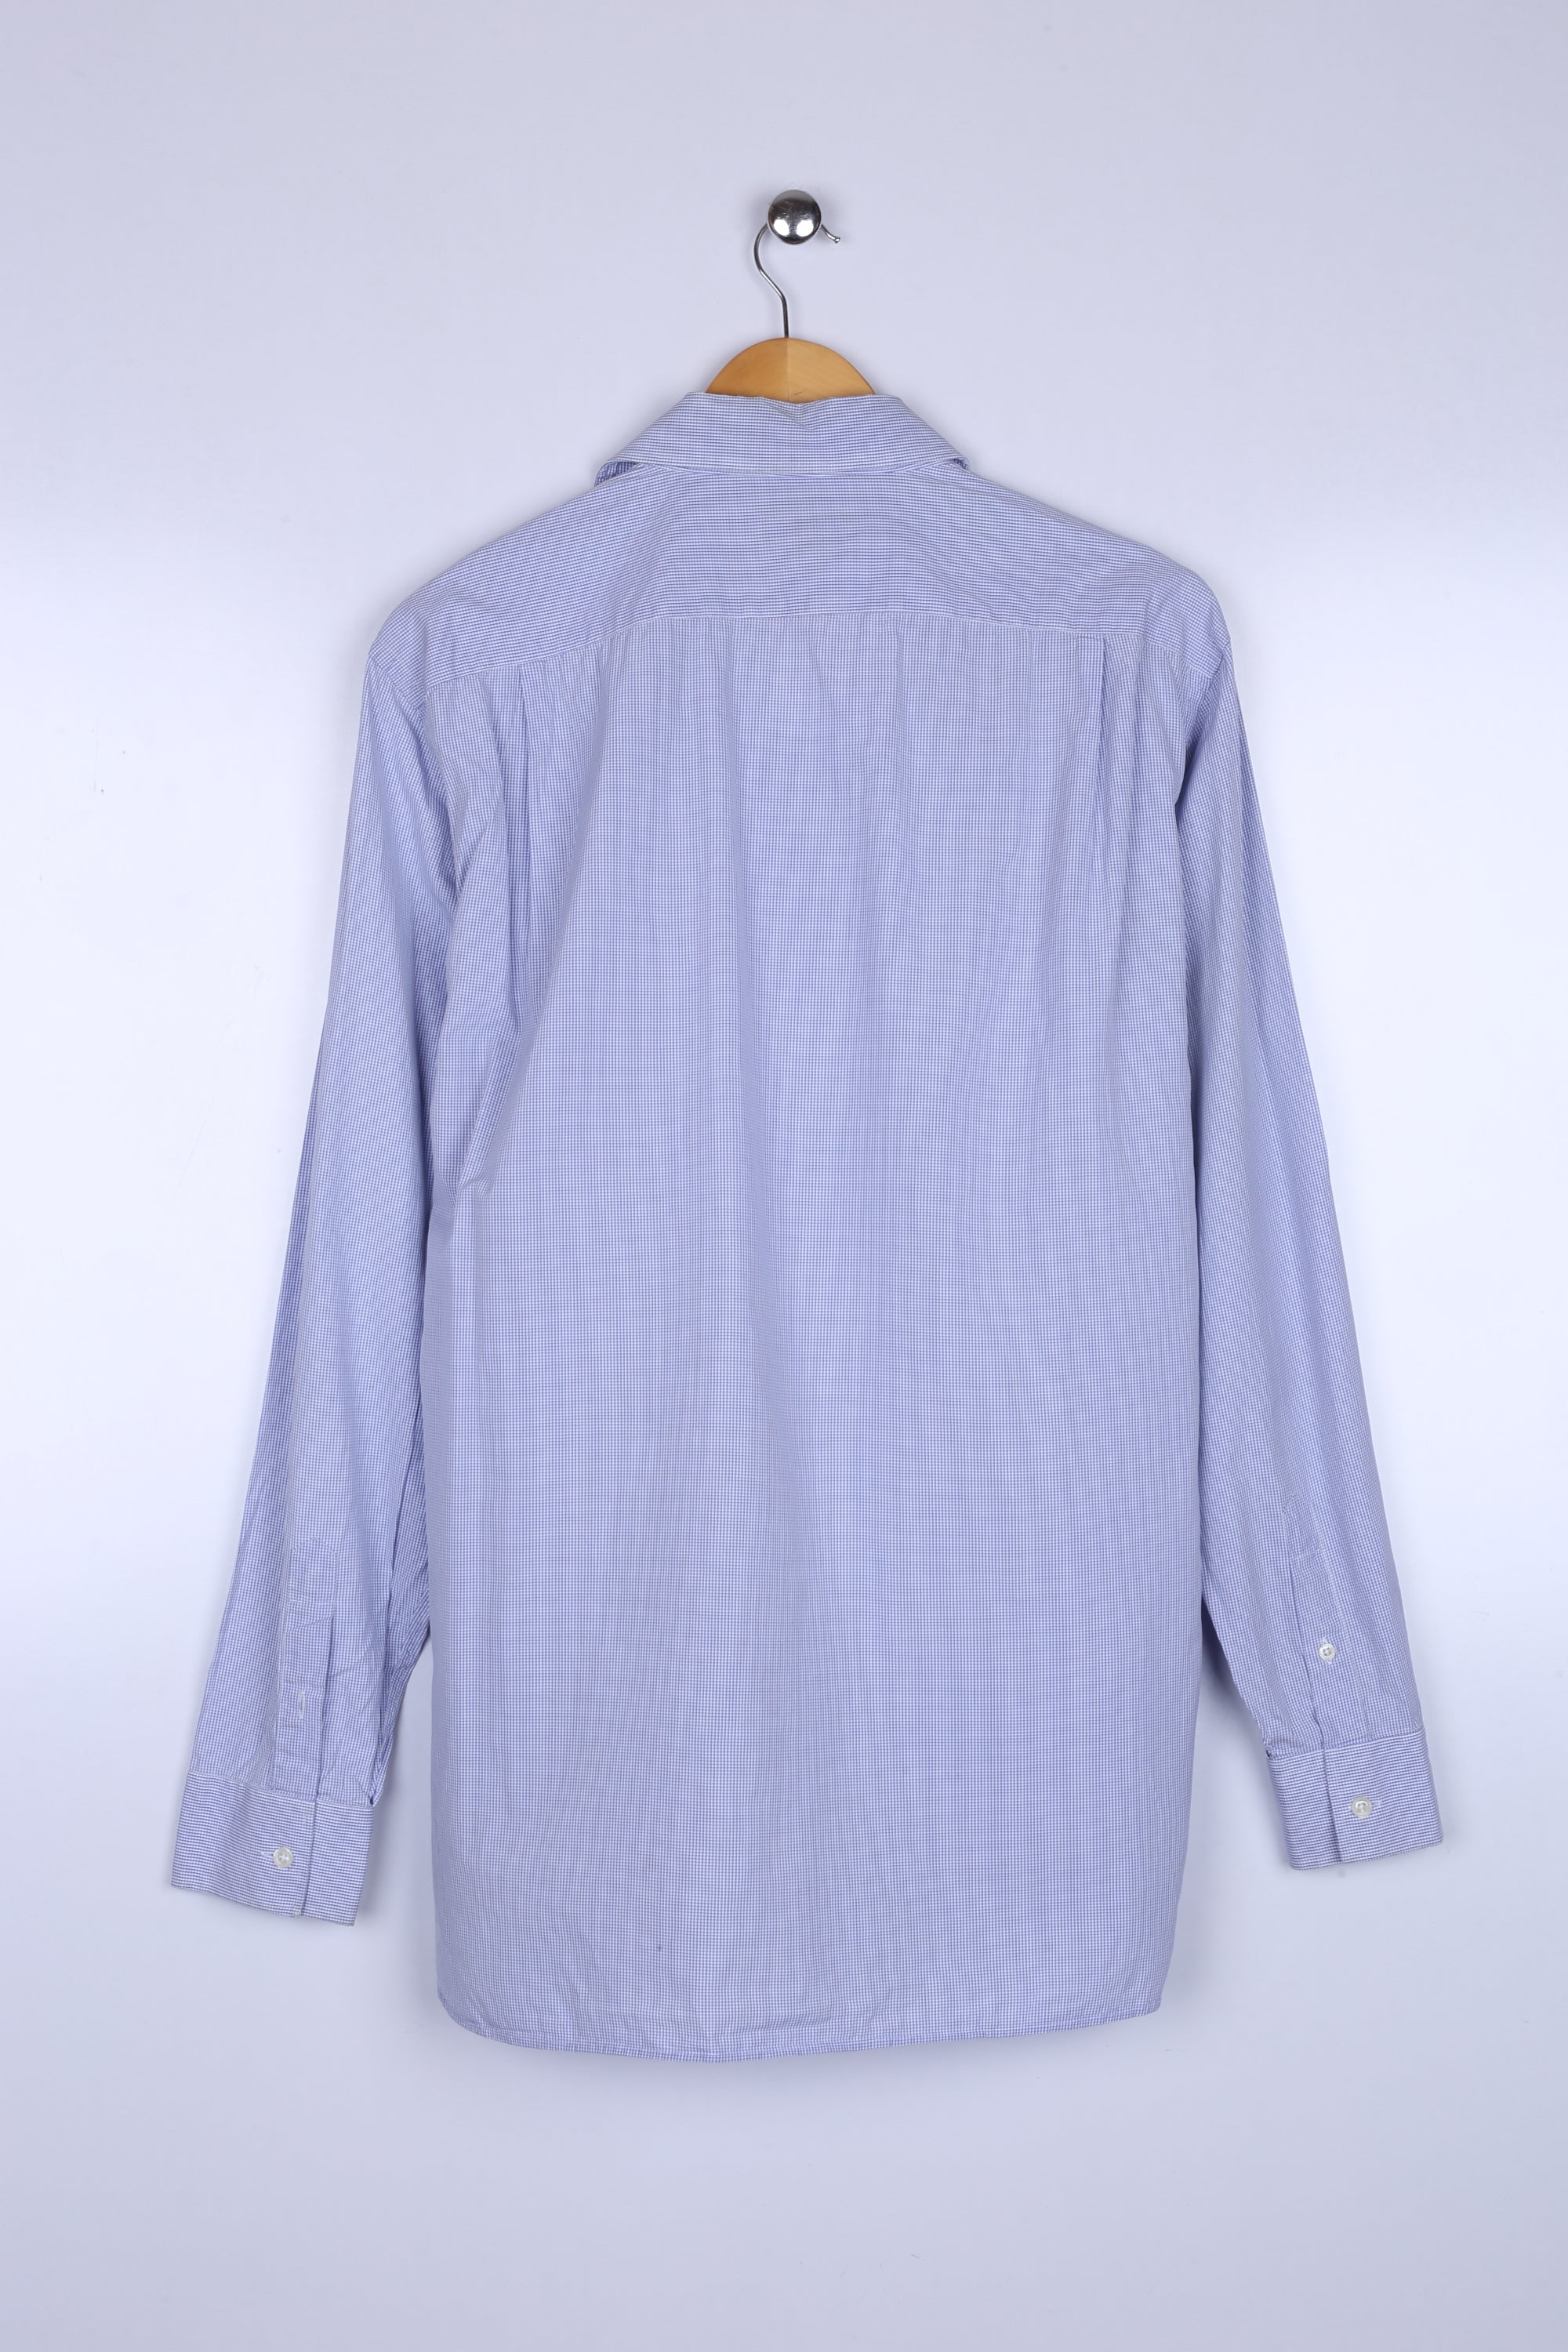 Vintage Burberry Shirt Sky Blue Checkered